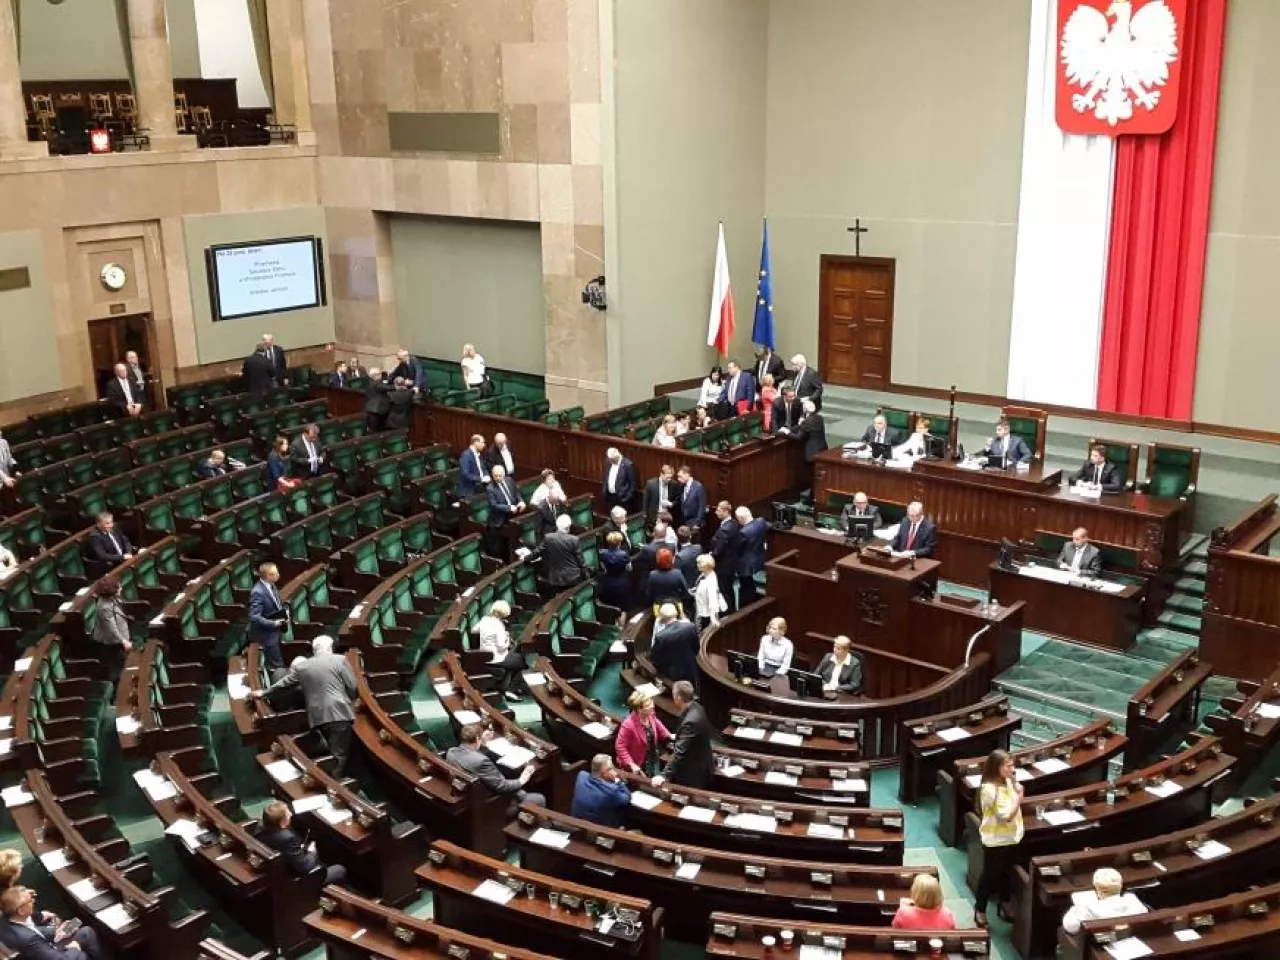 Prace nad podatkiem handlowym rozpoczęły się w Sejmie w środę wieczorem (fot. materiały własne)